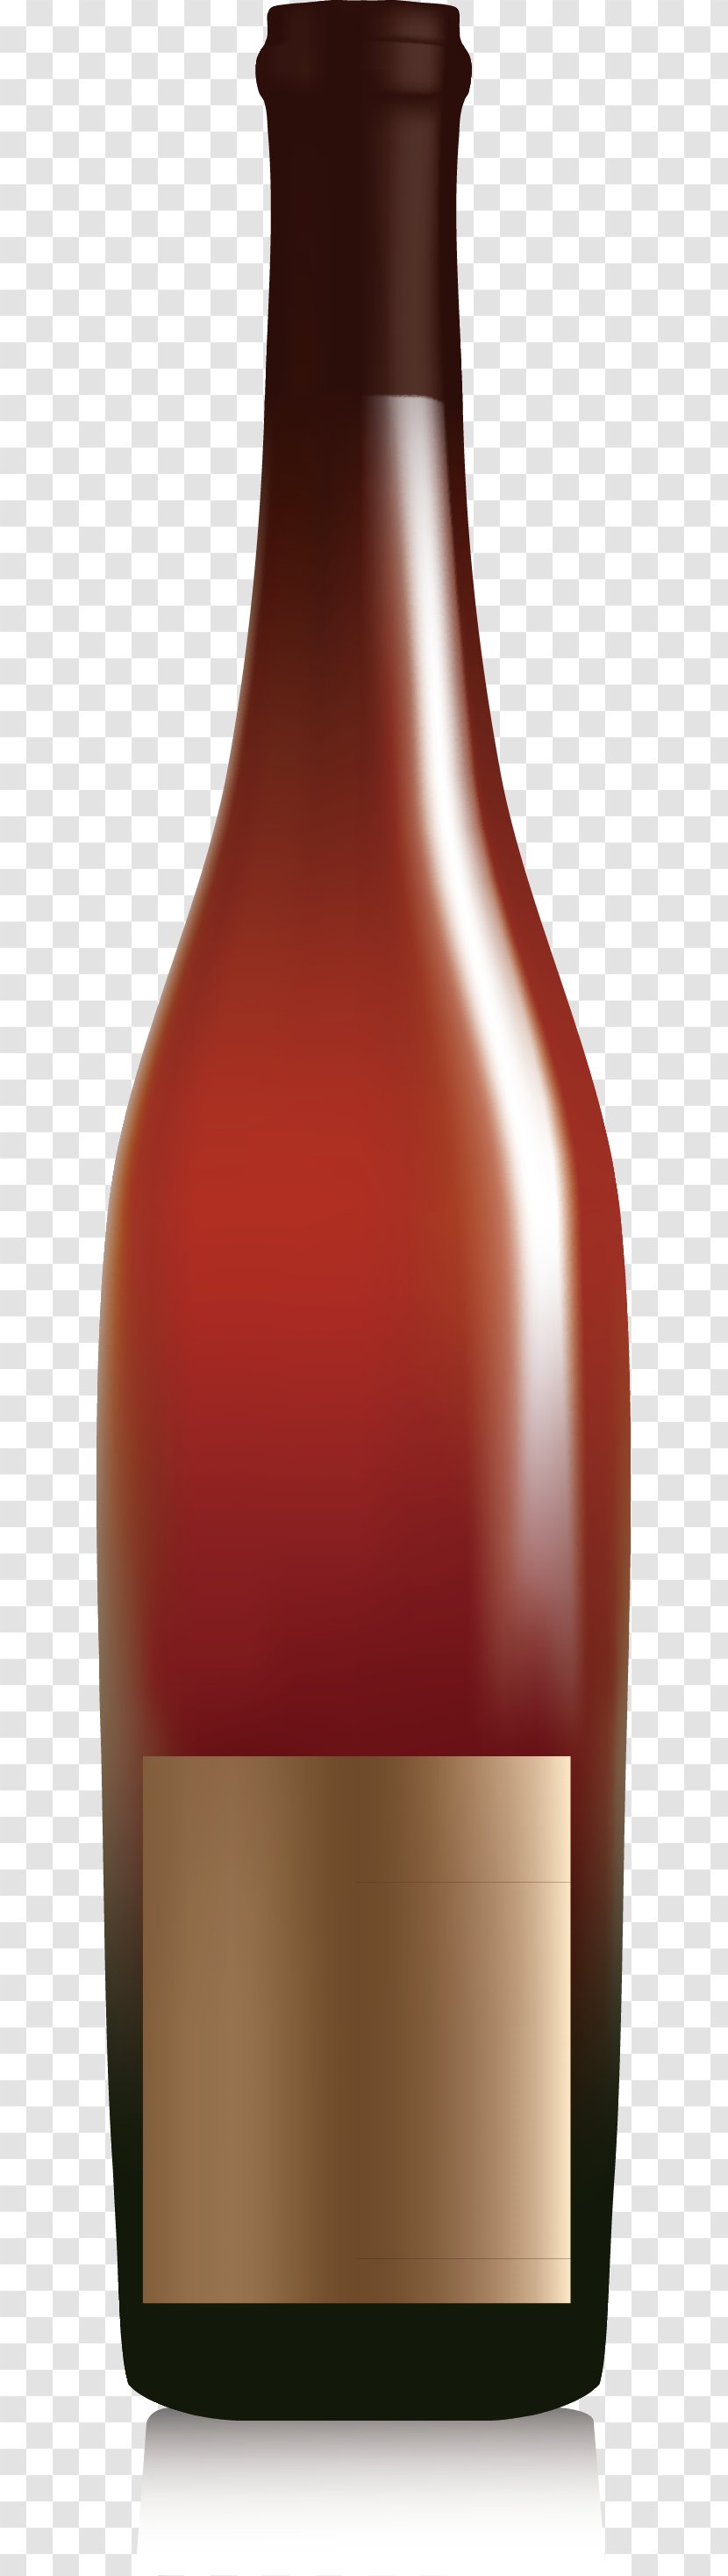 Wine Glass Bottle - Alcoholic Beverage - Red Decoration Design Transparent PNG